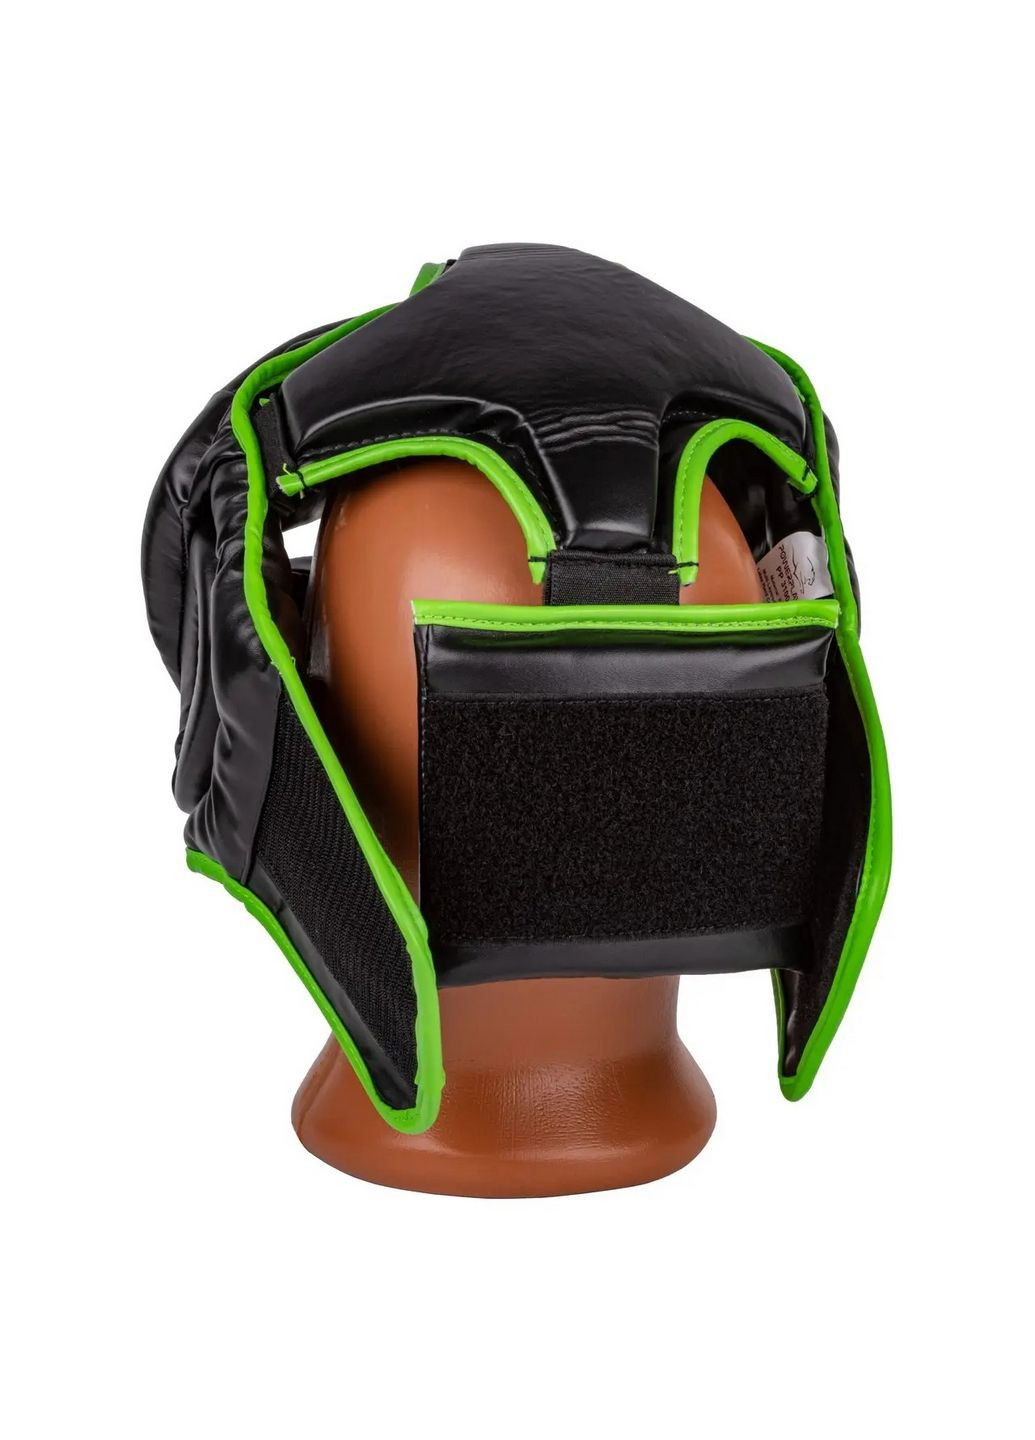 Боксерский шлем 3100 PU (тренировочный) PowerPlay (293481805)